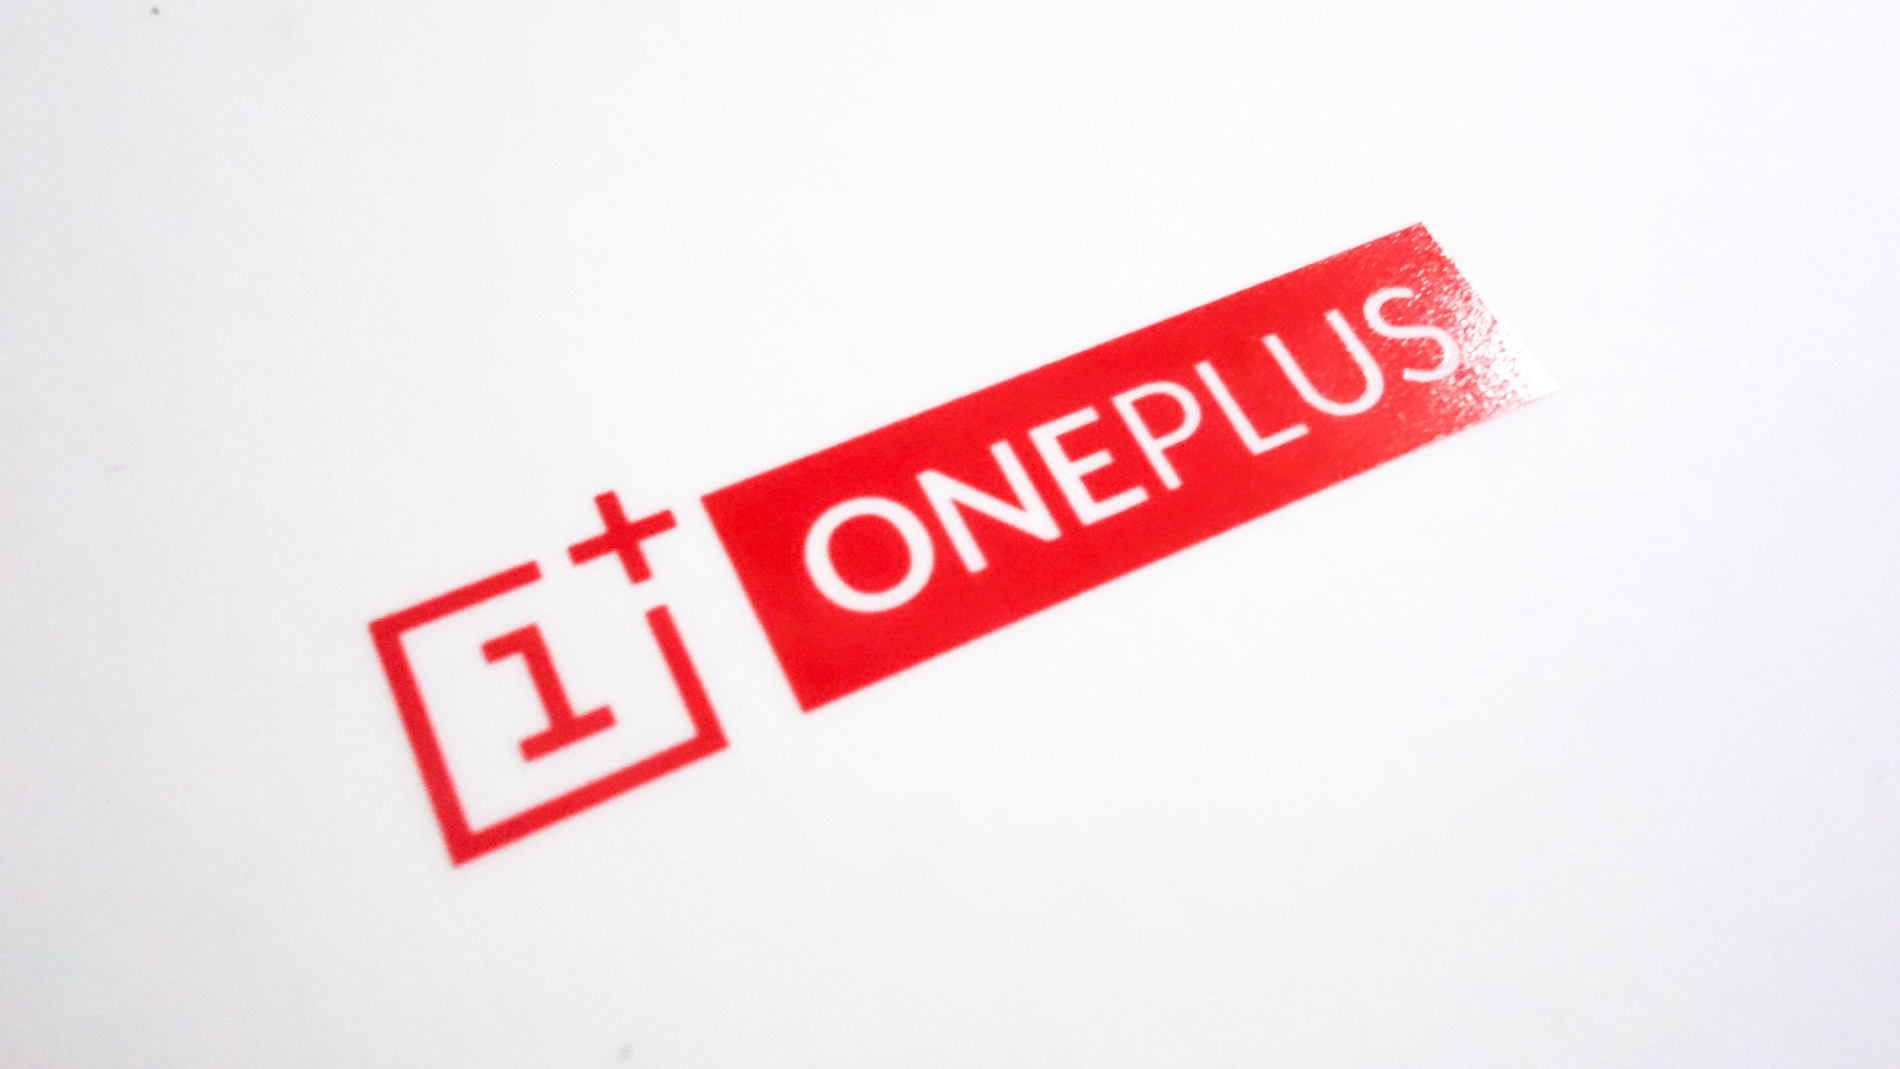 Le OnePlus 6 en exclusivité et officiellement en France le 21 mai 2018 !